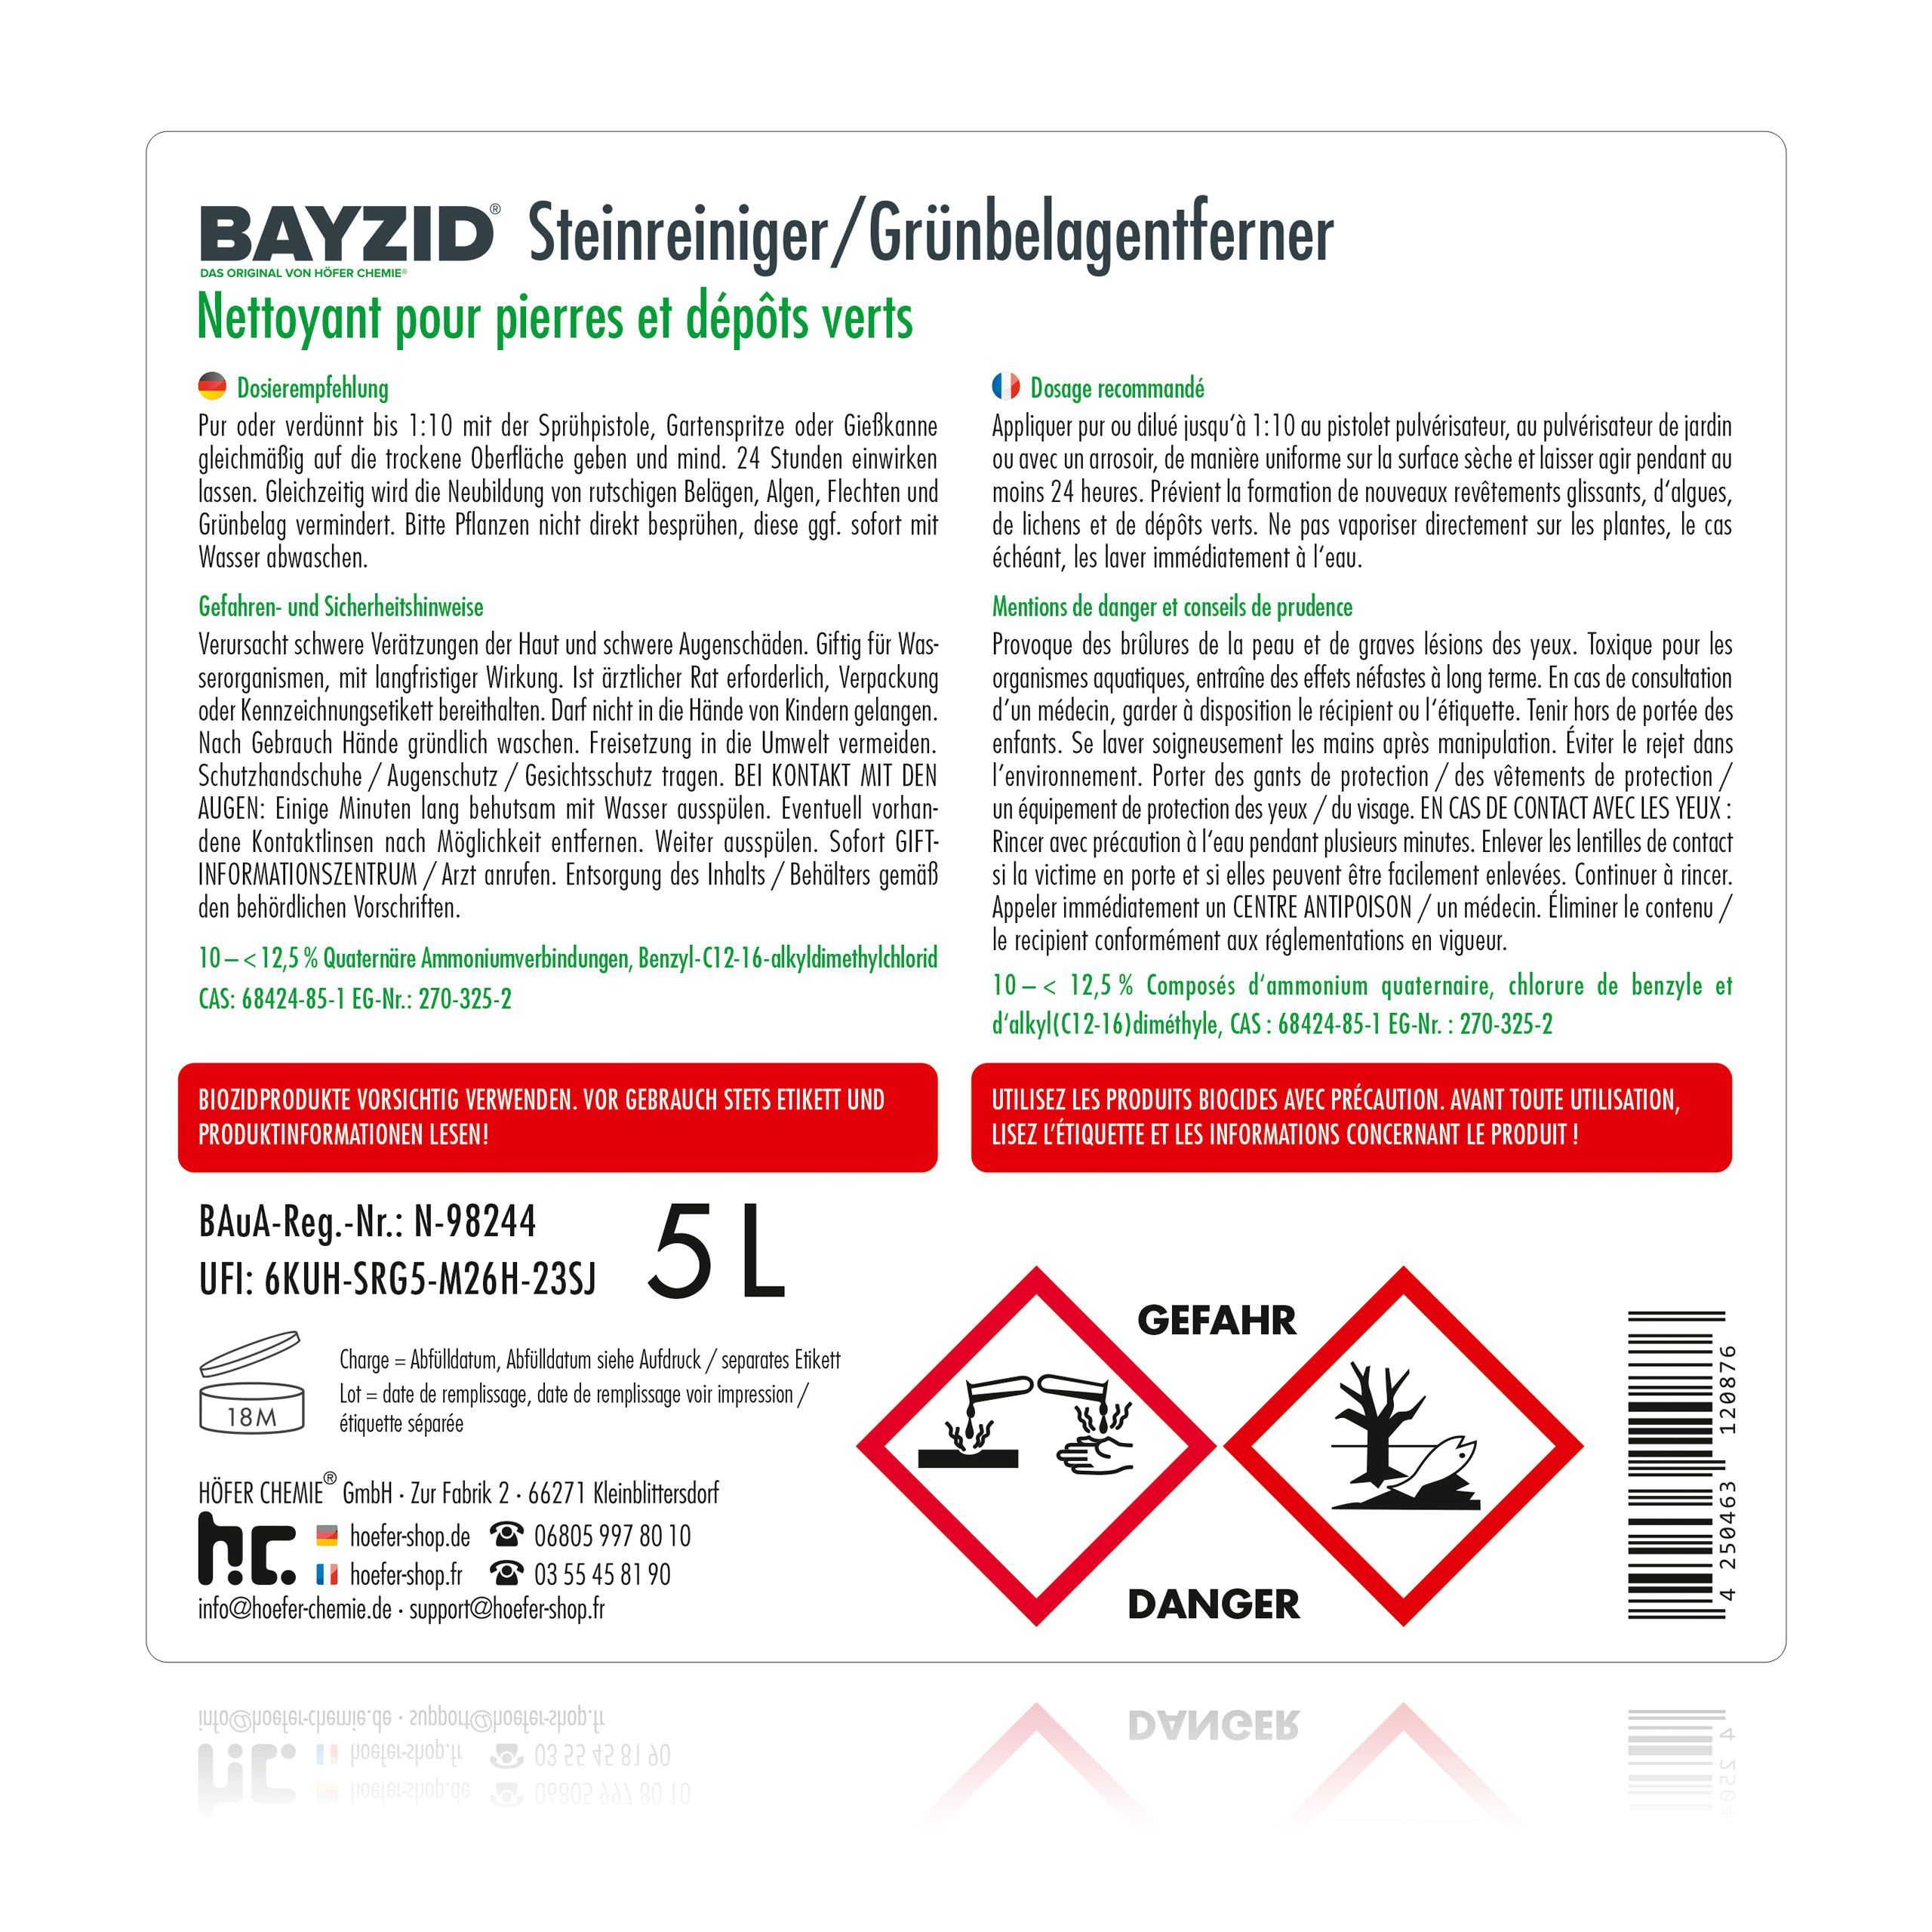 5 L Bayzid® Steinreiniger / Grünbelag-Entferner